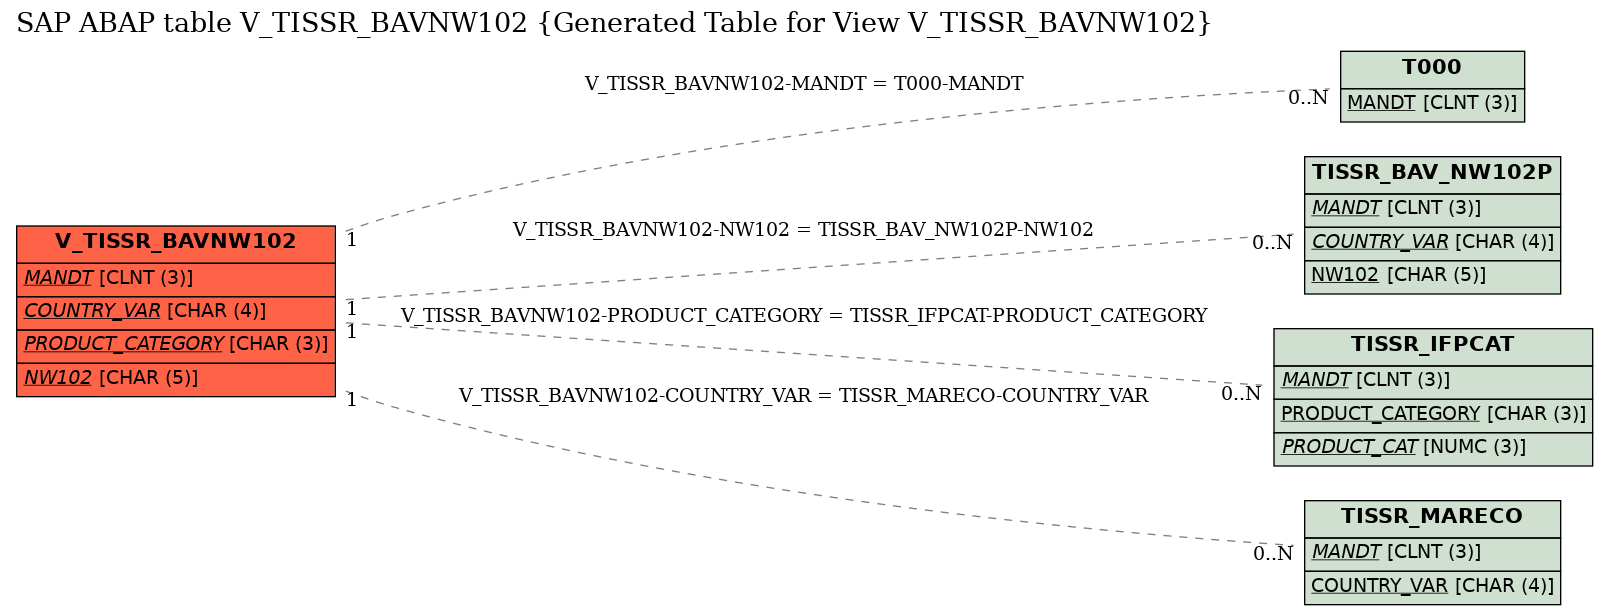 E-R Diagram for table V_TISSR_BAVNW102 (Generated Table for View V_TISSR_BAVNW102)